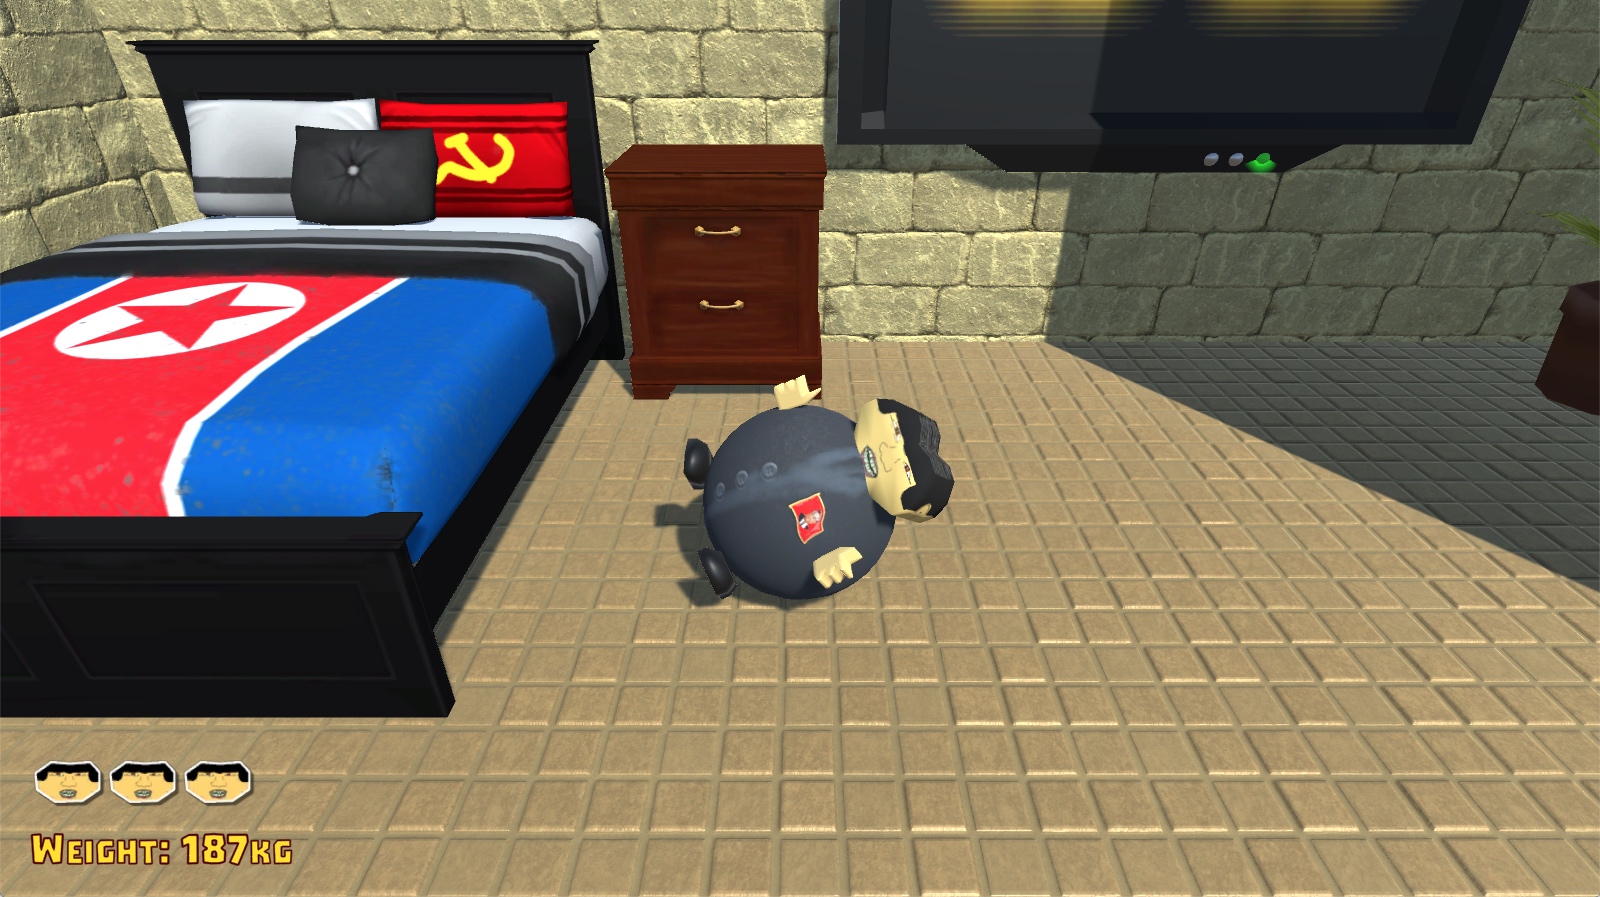 Screenshot aus dem ersten Level des Spiels „Kim’s Morning Routine“